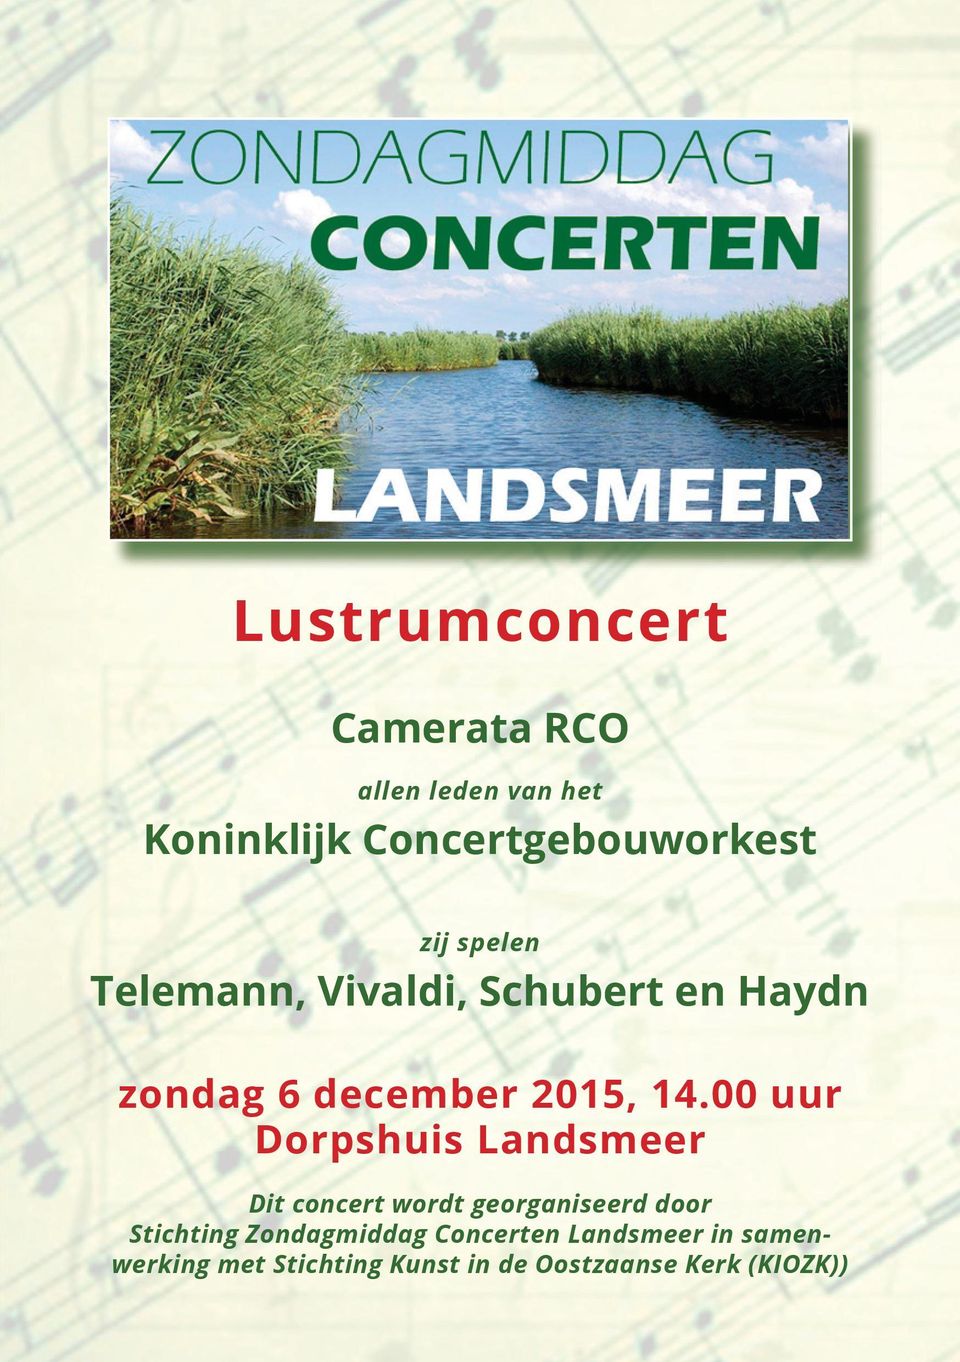 00 uur Dorpshuis Landsmeer Dit concert wordt georganiseerd door Stichting